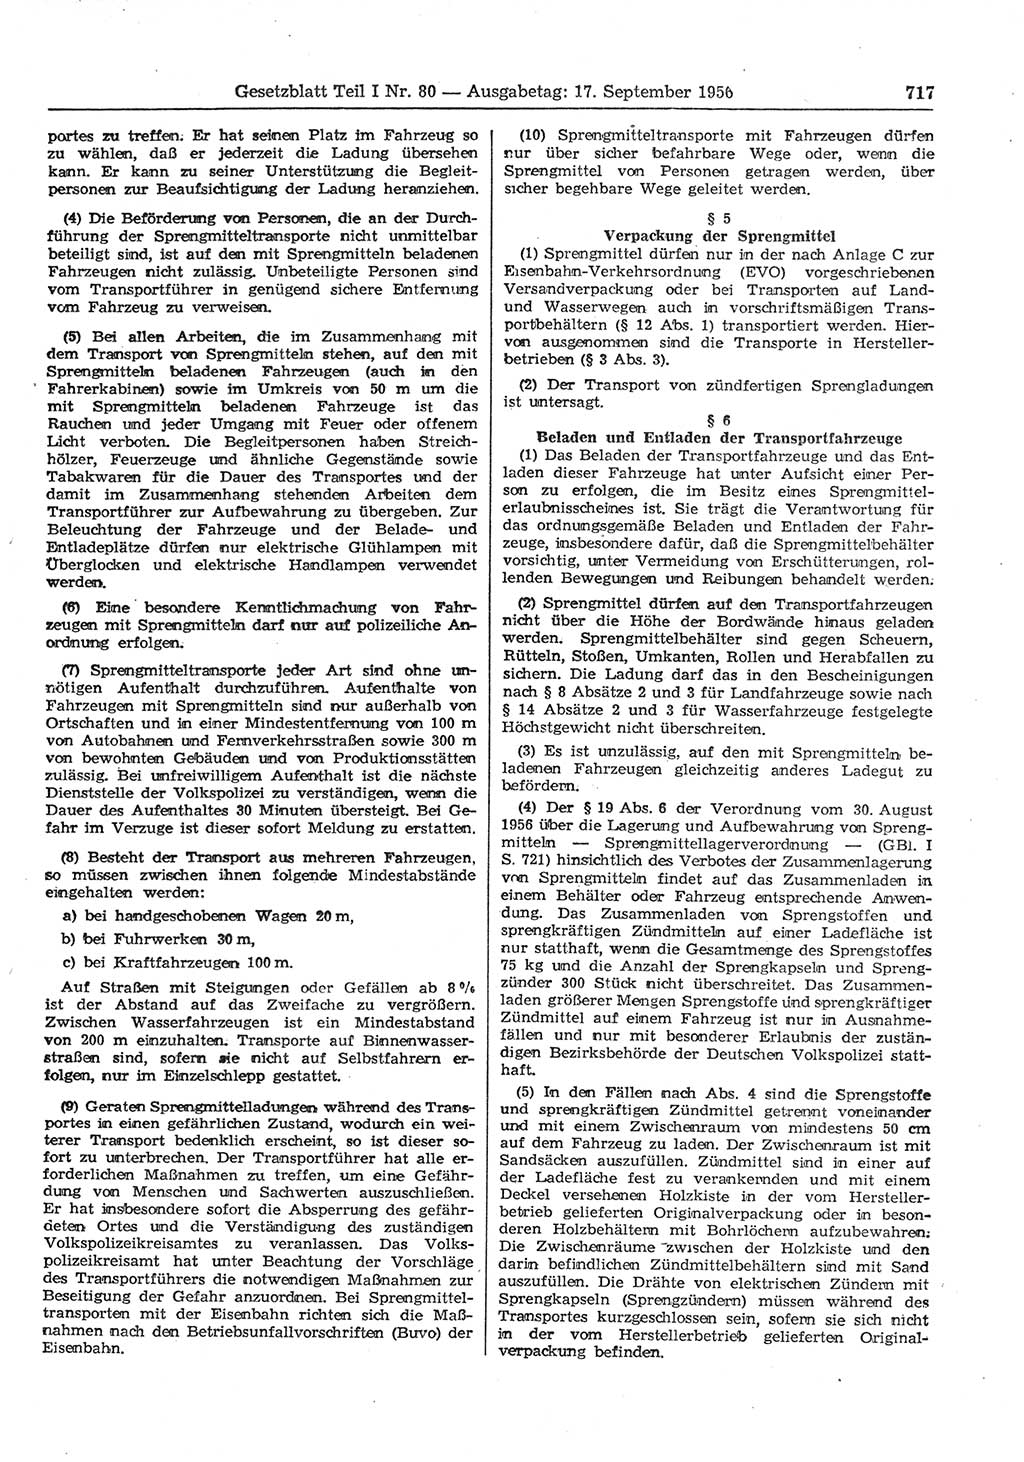 Gesetzblatt (GBl.) der Deutschen Demokratischen Republik (DDR) Teil Ⅰ 1956, Seite 717 (GBl. DDR Ⅰ 1956, S. 717)